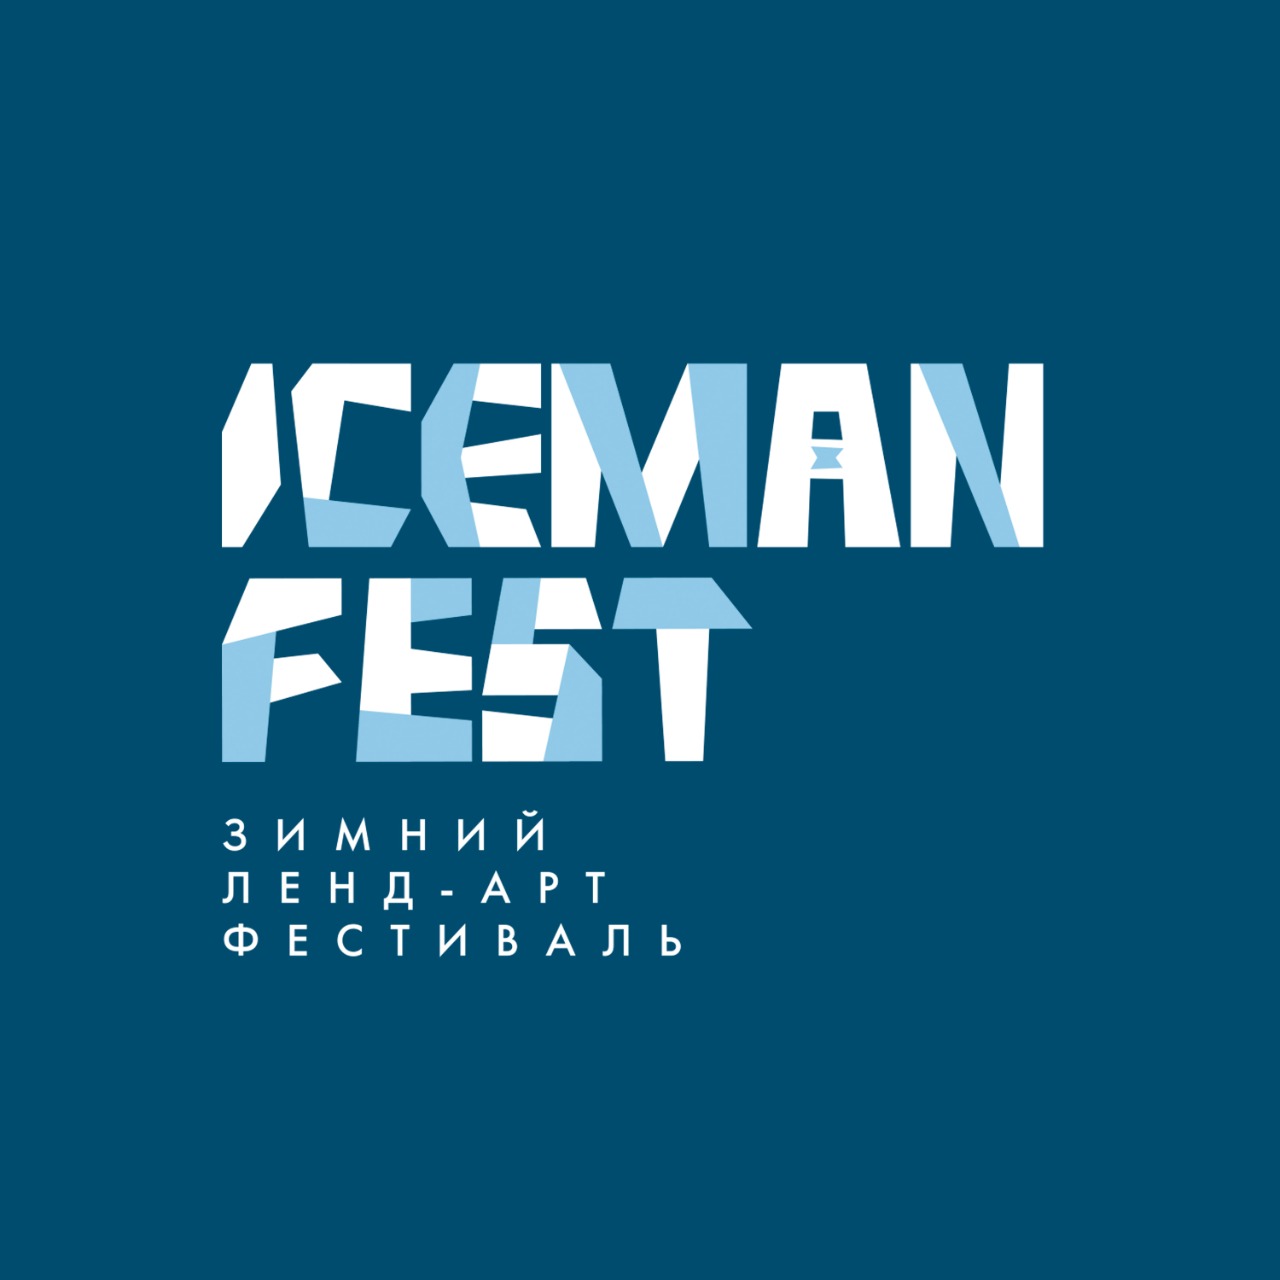 Перформанс и проекционное шоу: Зимний ленд-арт фестиваль «Iceman Fest» пройдет онлайн